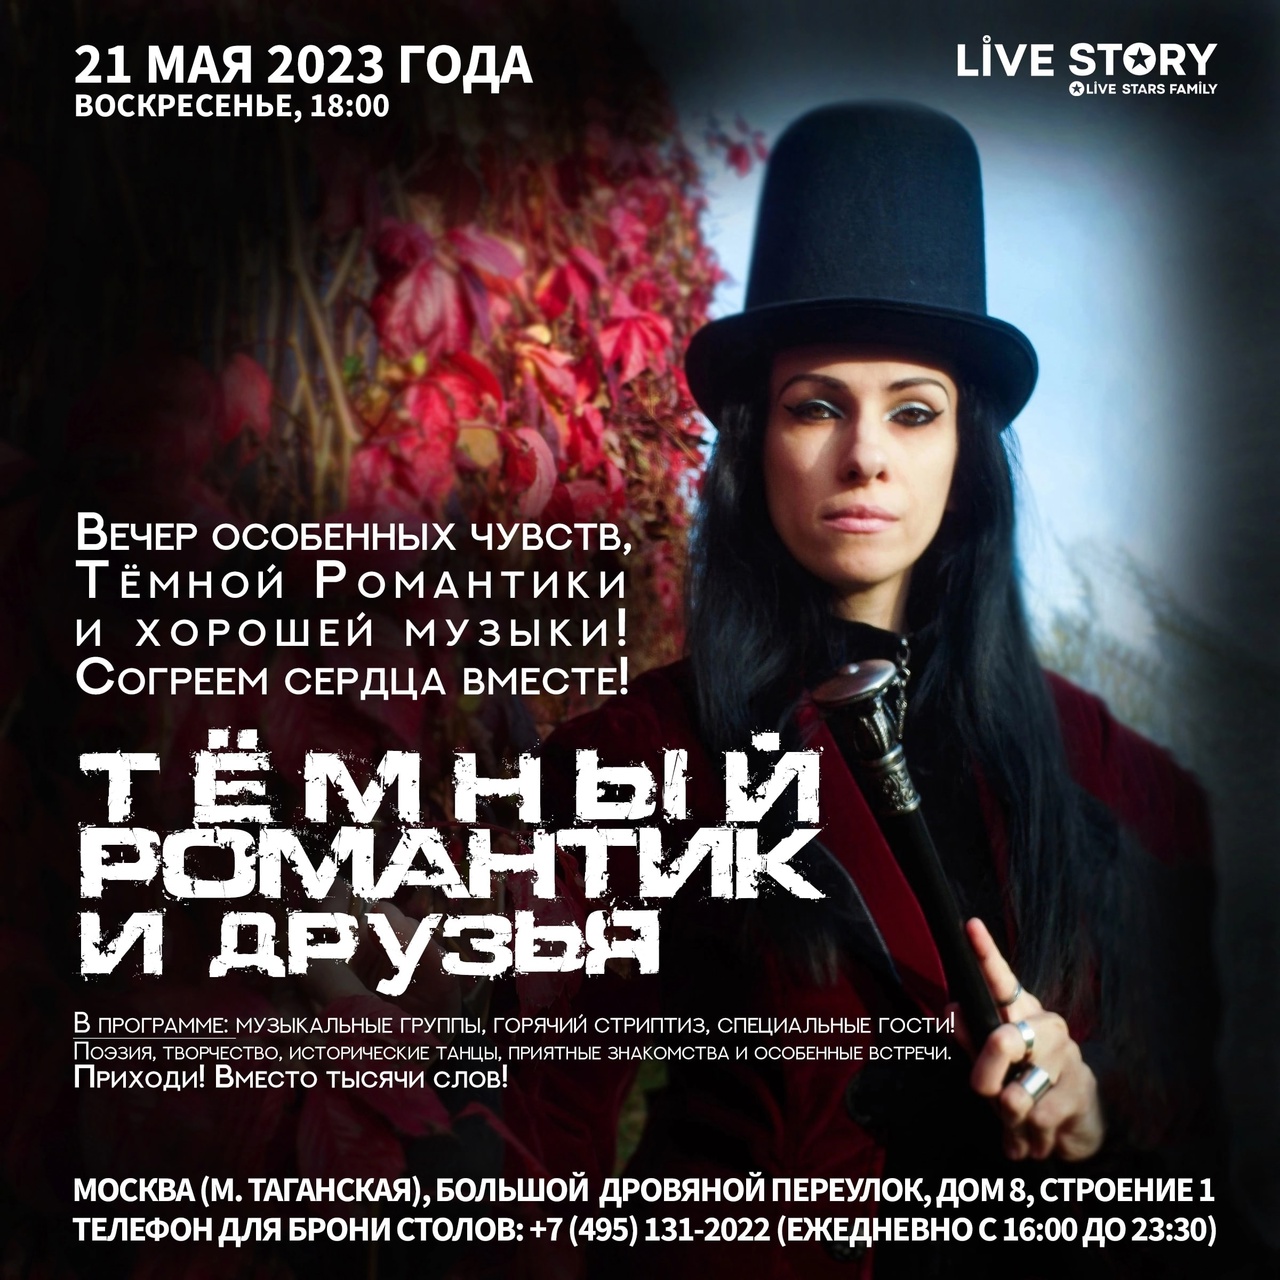 Афиша концертов - Live Story